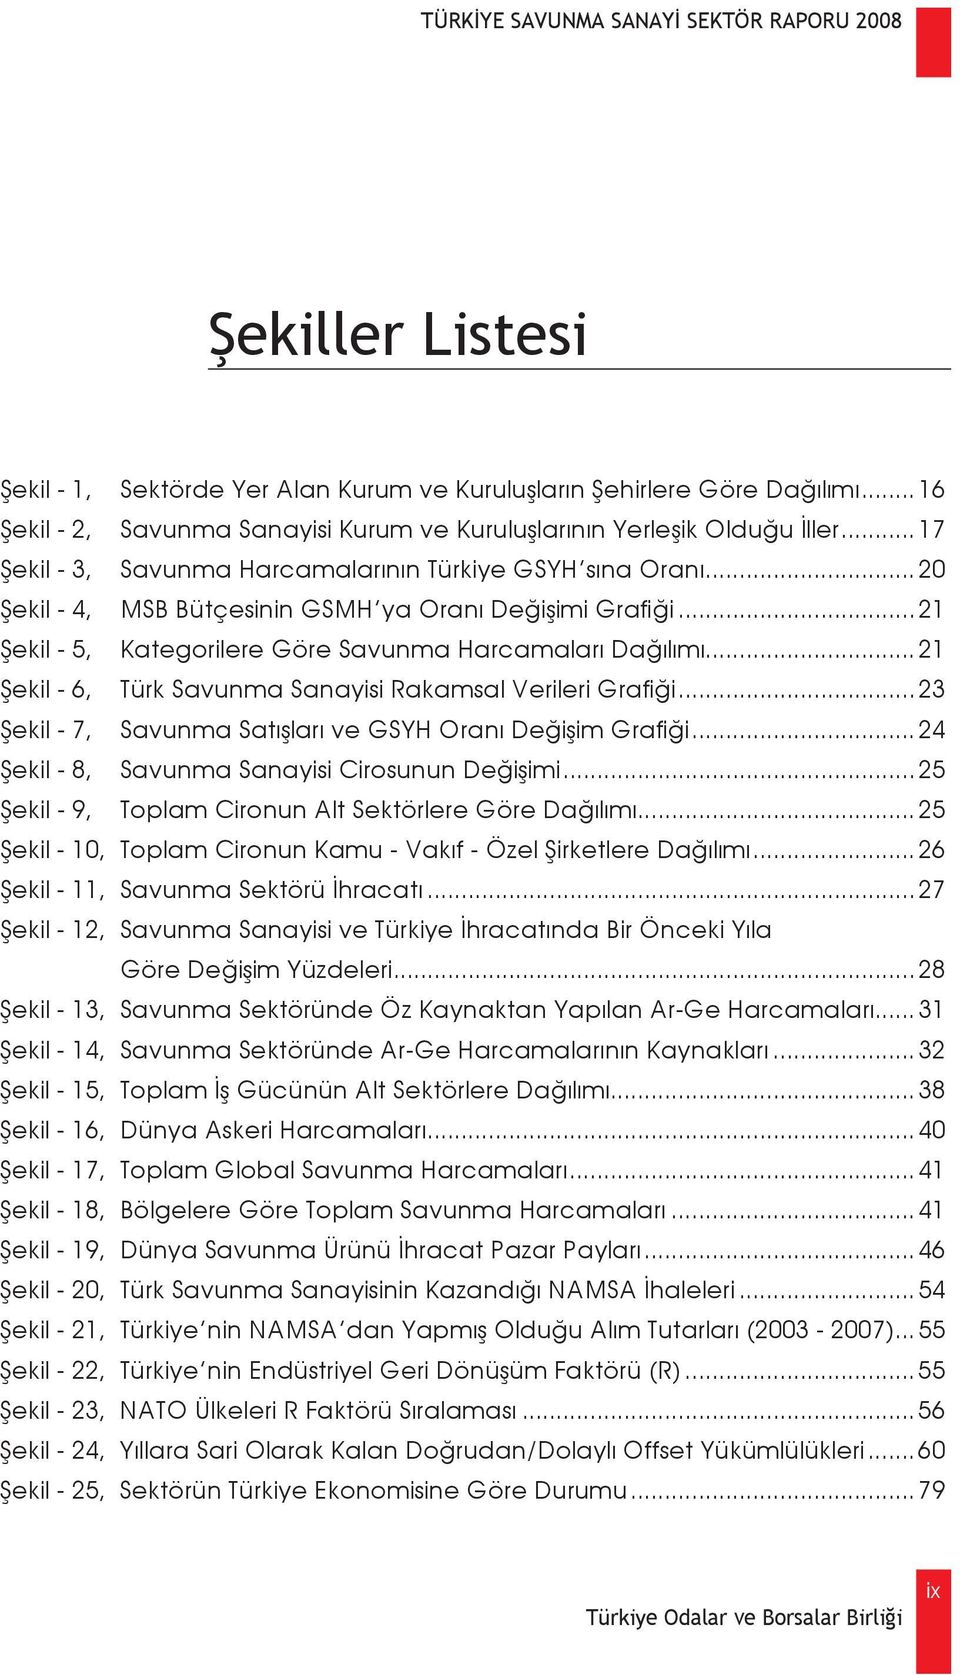 ..21 Şekil - 6, Türk Savunma Sanayisi Rakamsal Verileri Grafiği...23 Şekil - 7, Savunma Satışları ve GSYH Oranı Değişim Grafiği...24 Şekil - 8, Savunma Sanayisi Cirosunun Değişimi.